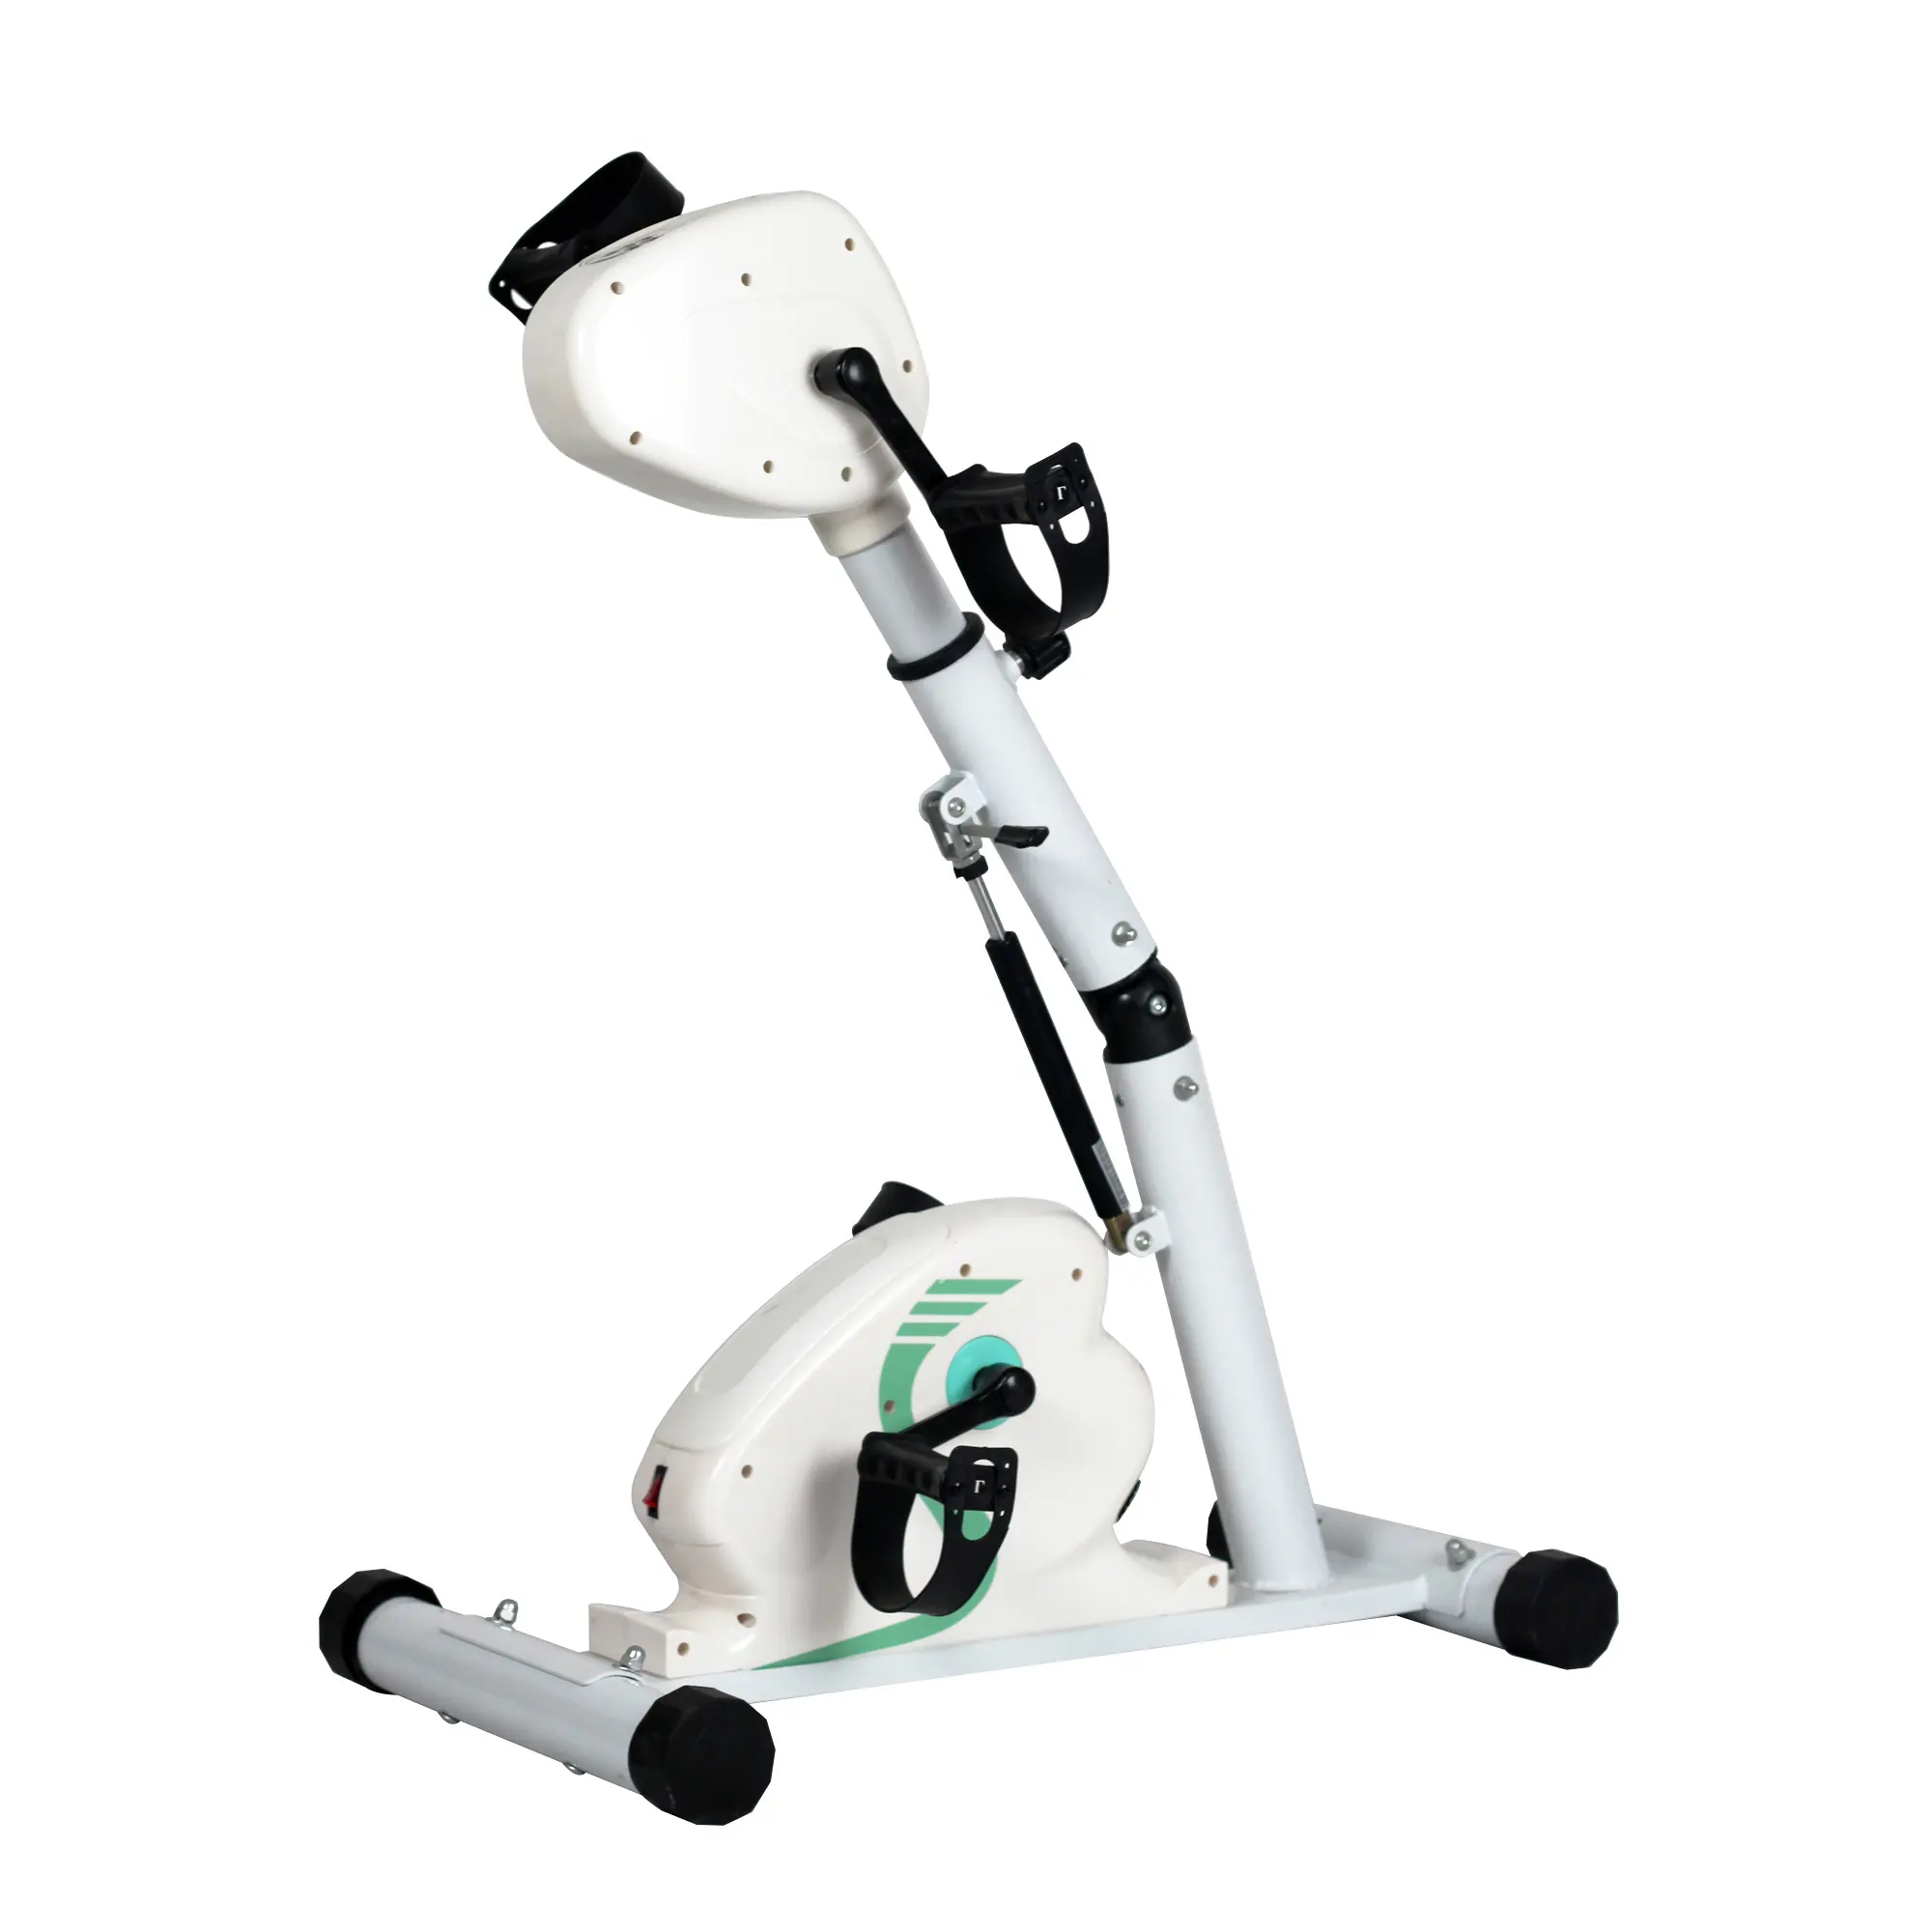 Fitness ekipmanları kol bacak pedalı egzersiz bisikleti elektronik fizik tedavi rehabilitasyon eğitim elektrikli mini egzersiz bisikleti